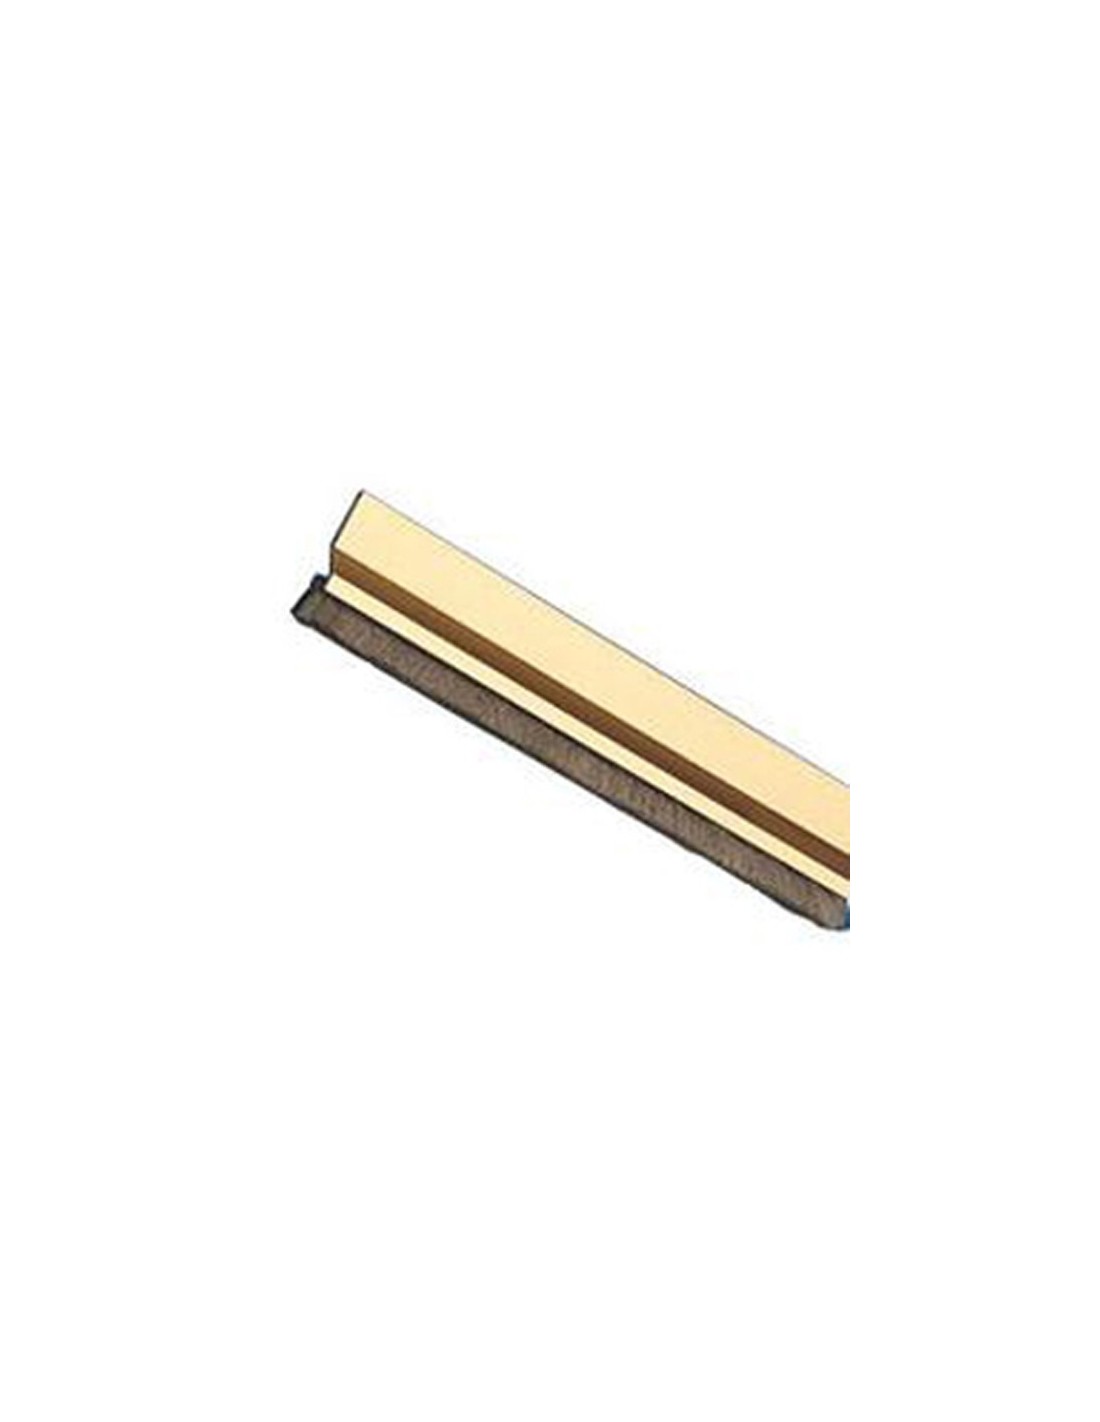 https://www.santiagovargas.es/2113-thickbox_default/burletes-para-puertas-de-entrada-burlete-2-de-820-oro-adhesivo-820-mm-acabado-aluminio-oro.jpg